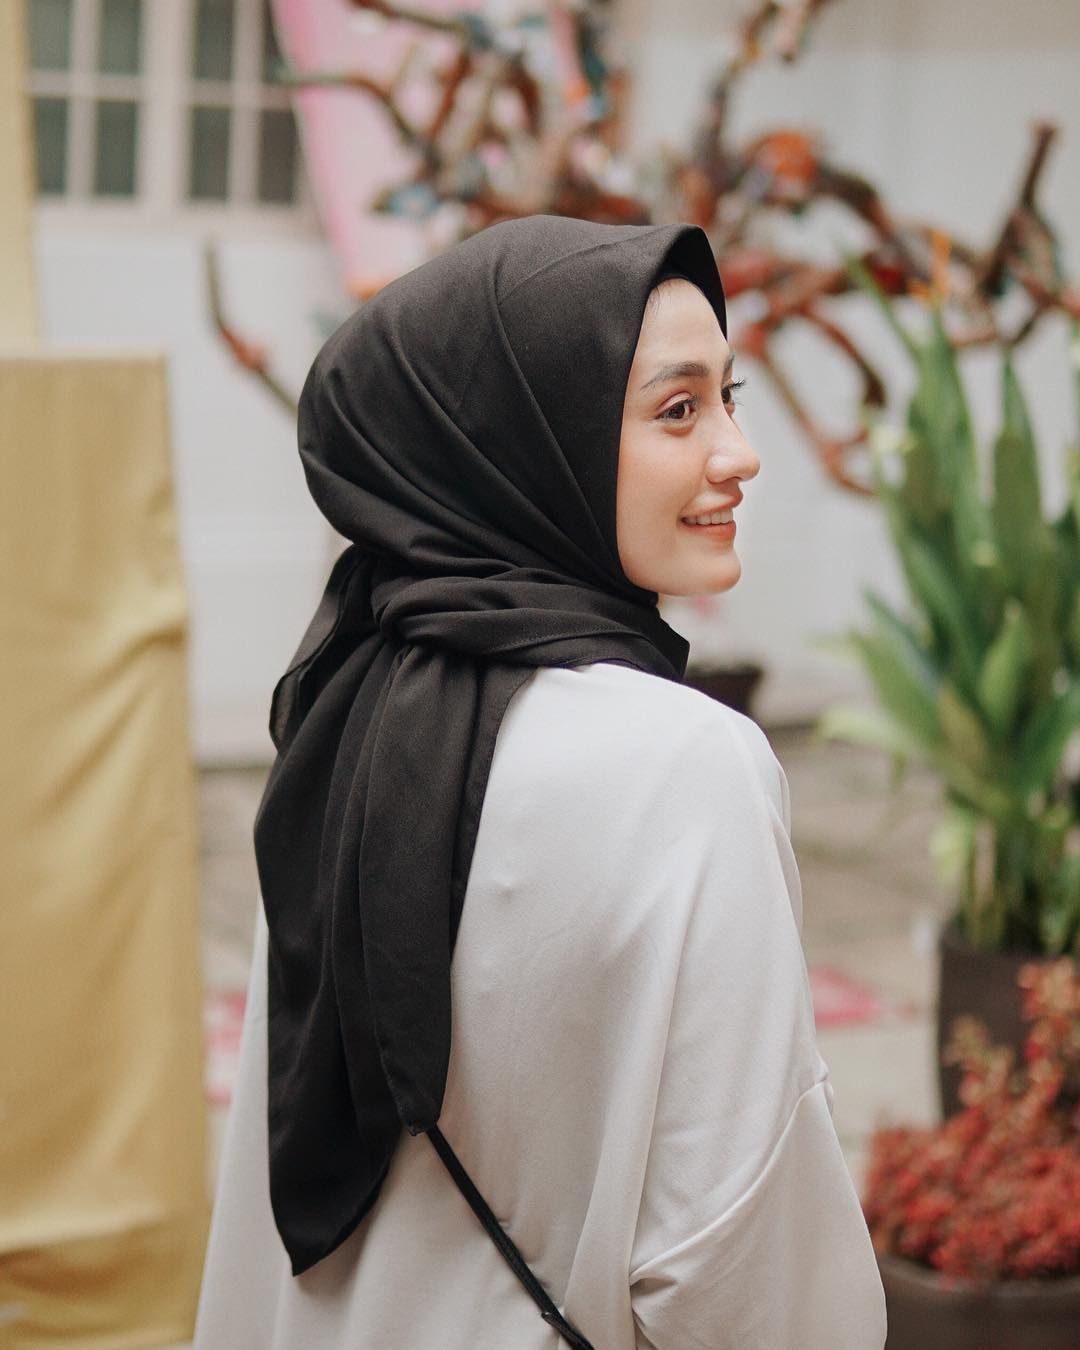 Tren Gaya Hijab 2019 Model Segi Empat Ala Selebgram Yang Bisa Kamu